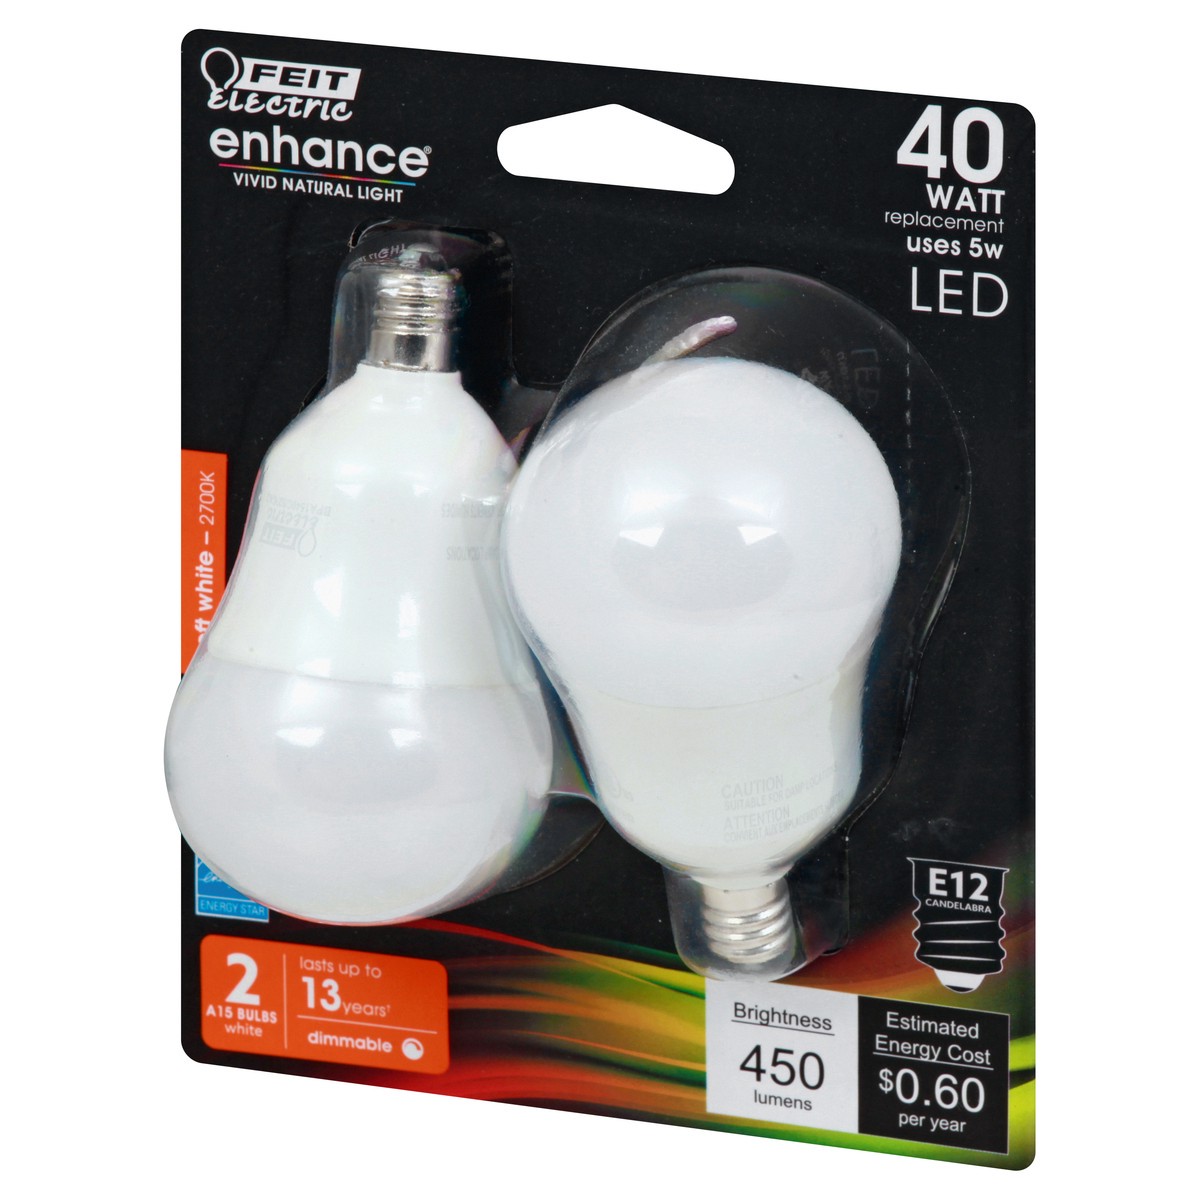 slide 3 of 8, Feit Electric Enhance 40 Watt LED Soft White Light Bulbs, 2 ct